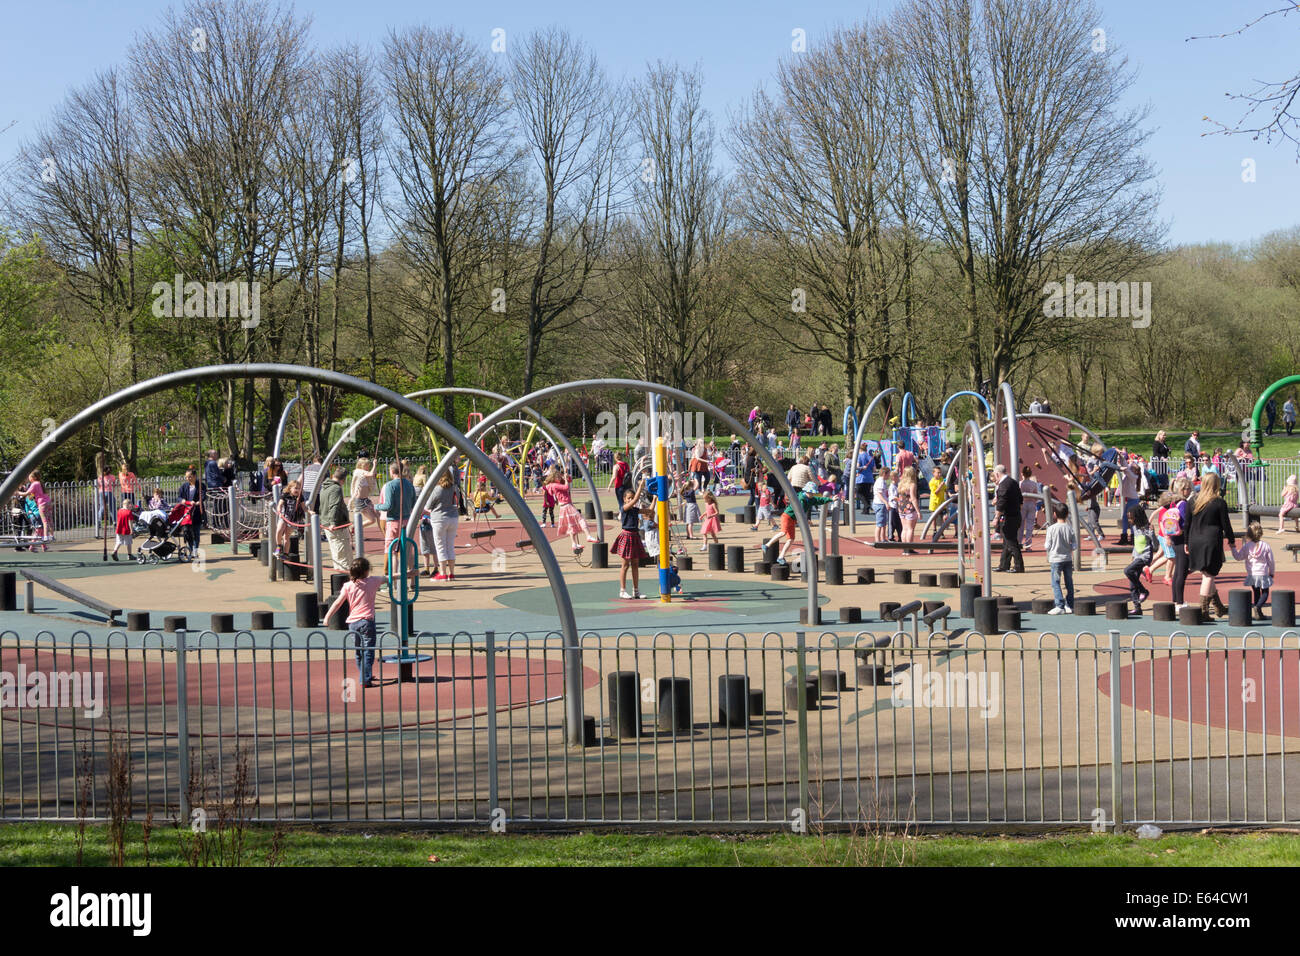 Viele Kinder spielen auf dem Spielplatz, der größte Borough Bolton, bei Moses Gate Country Park, Farnworth. Stockfoto